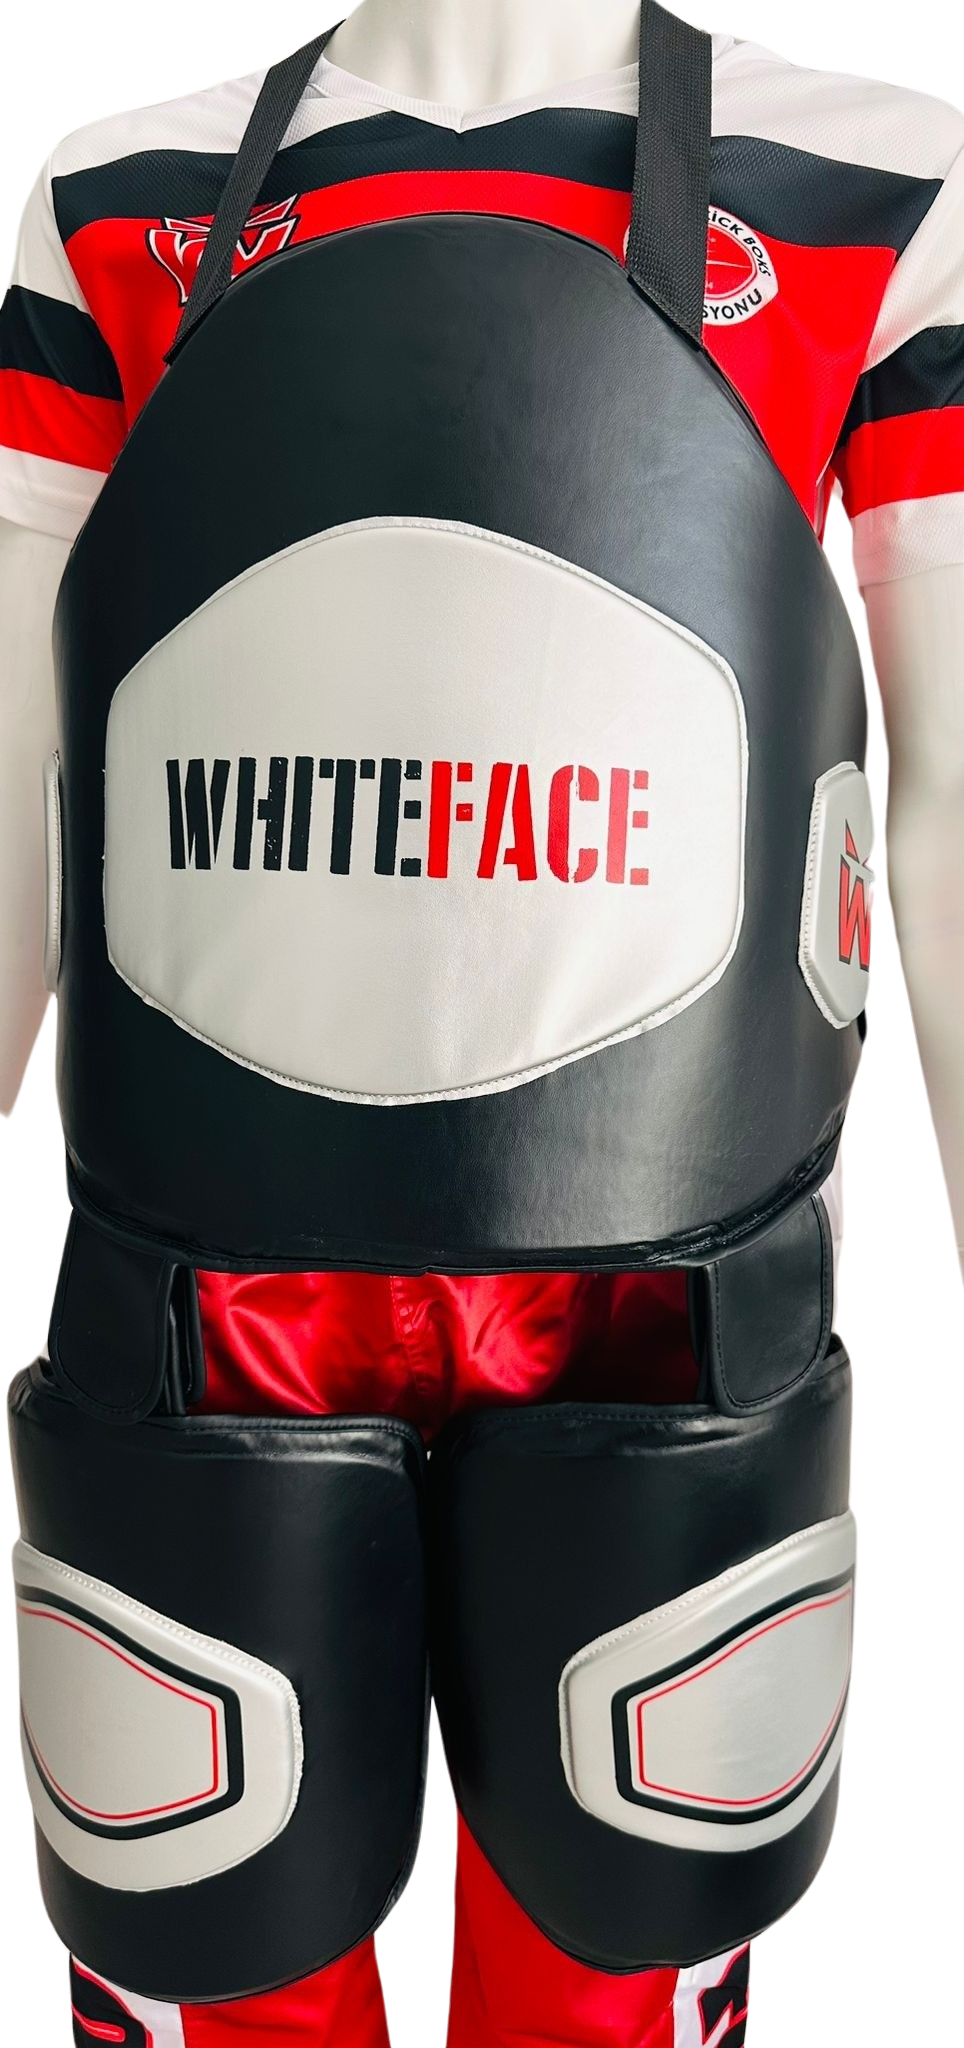 Whiteface Antrenör Bacak ve Göğüs Koruyucu Takımı